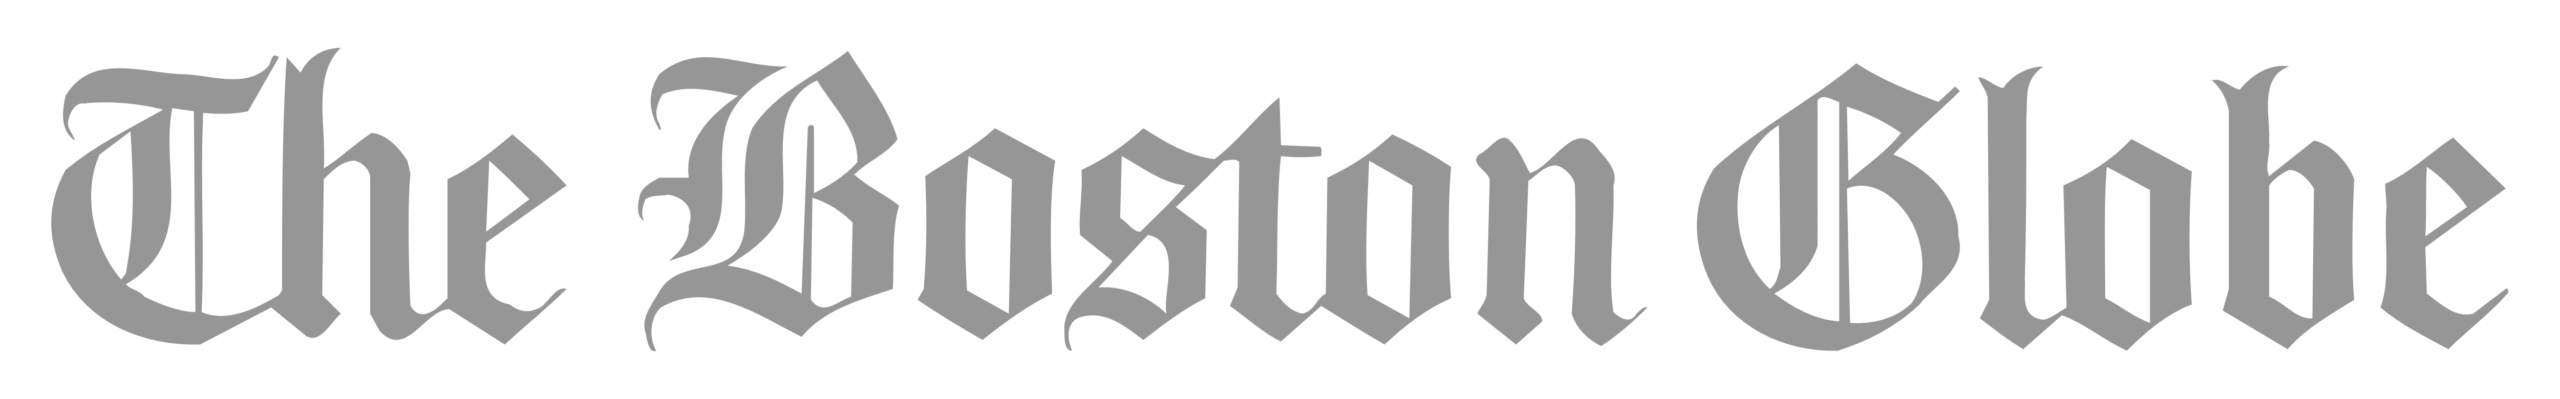 The_Boston_Globe_logo (1)